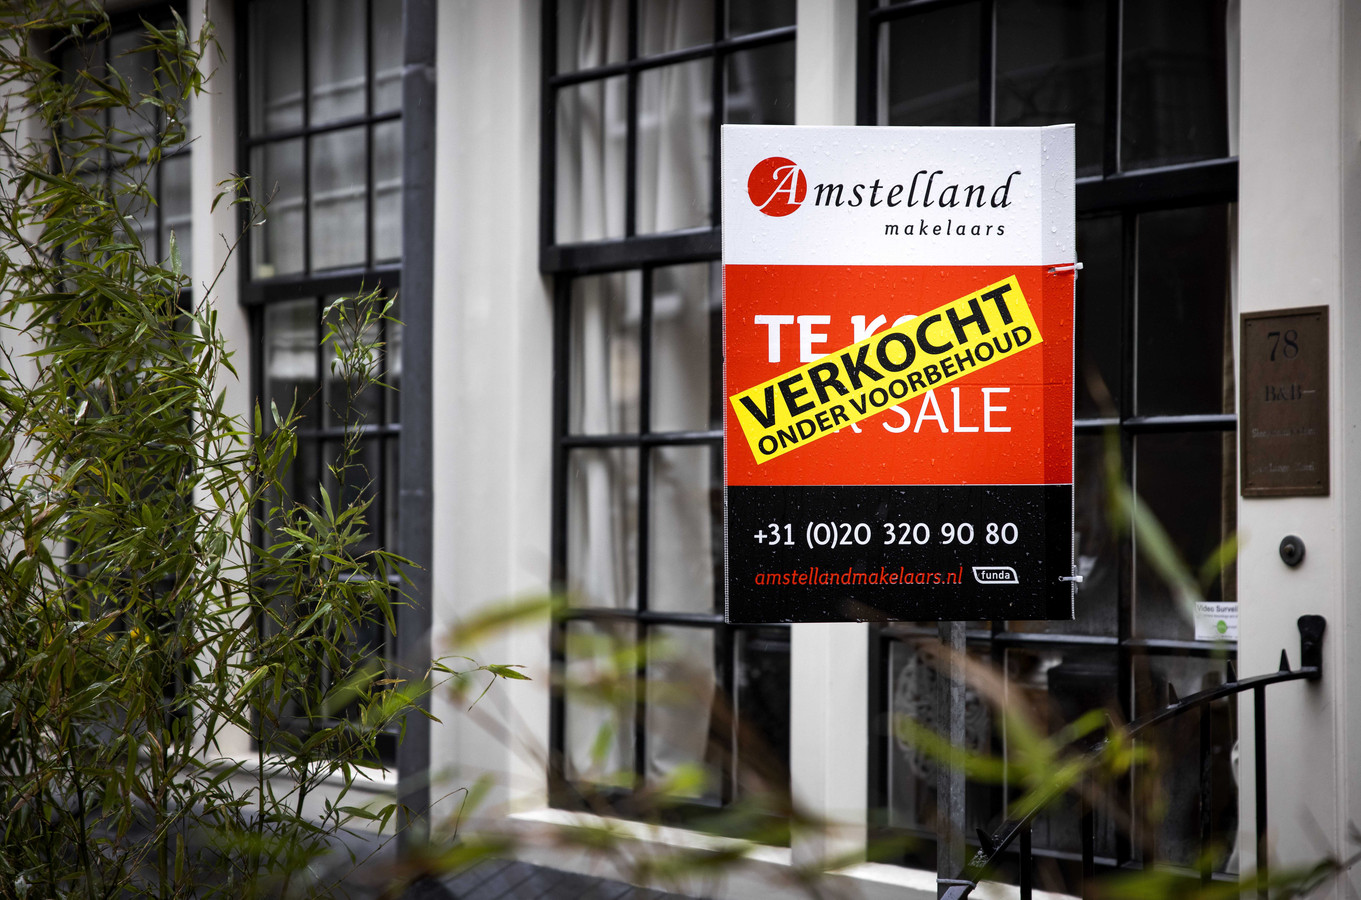 De Nederlandse woningmarkt blijft ook dit jaar waarschijnlijk ‘oververhit',  denken economen van Rabobank. Zoals het er nu uitziet worden koopwoningen volgens hun ramingen dit jaar gemiddeld 17,3 procent duurder.